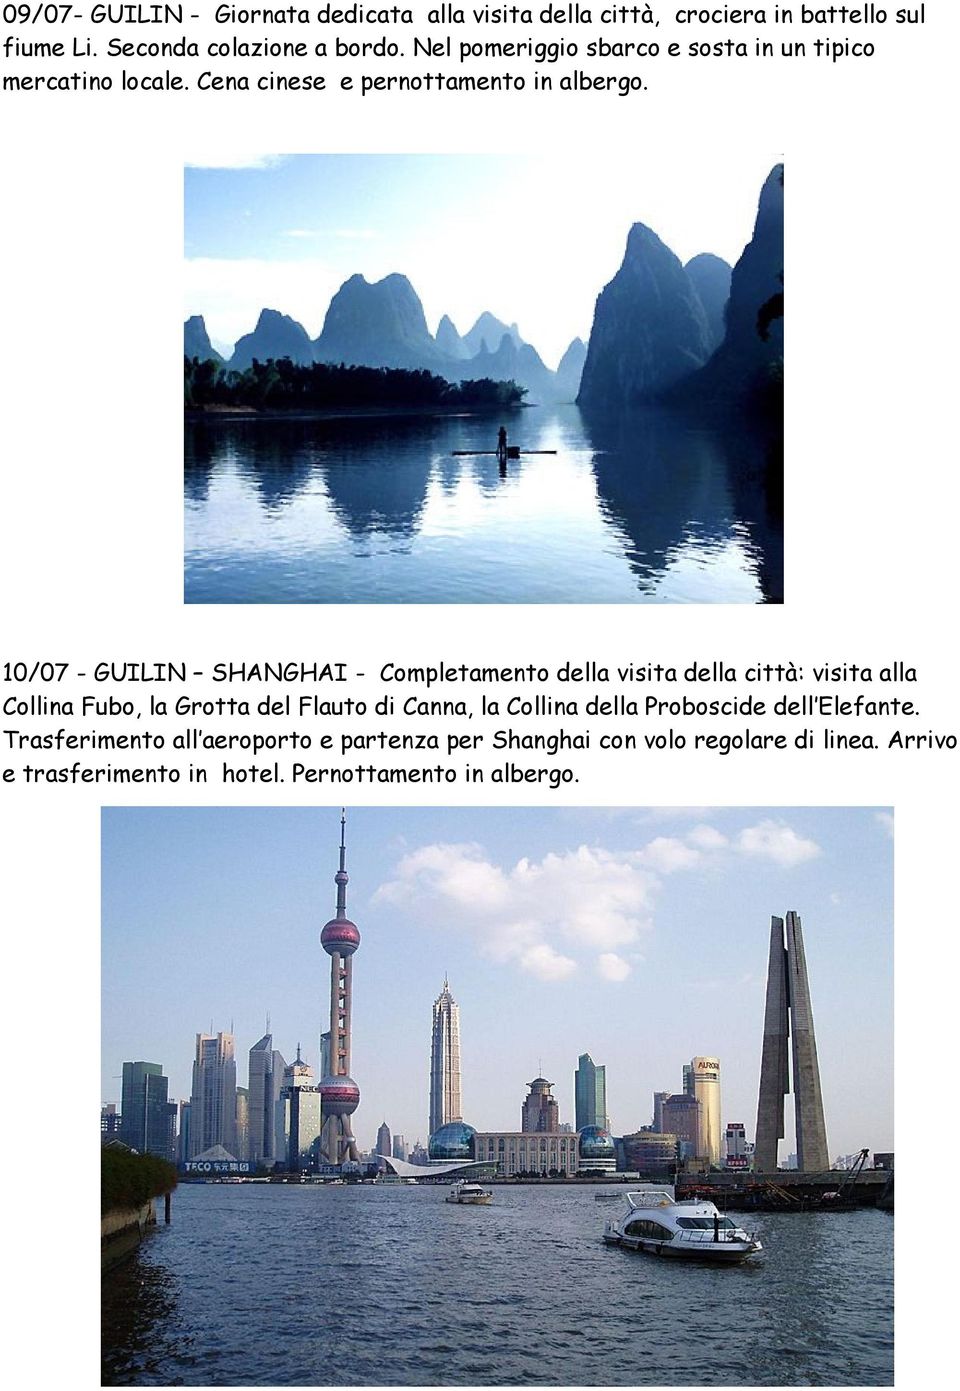 10/07 - GUILIN SHANGHAI - Completamento della visita della città: visita alla Collina Fubo, la Grotta del Flauto di Canna, la